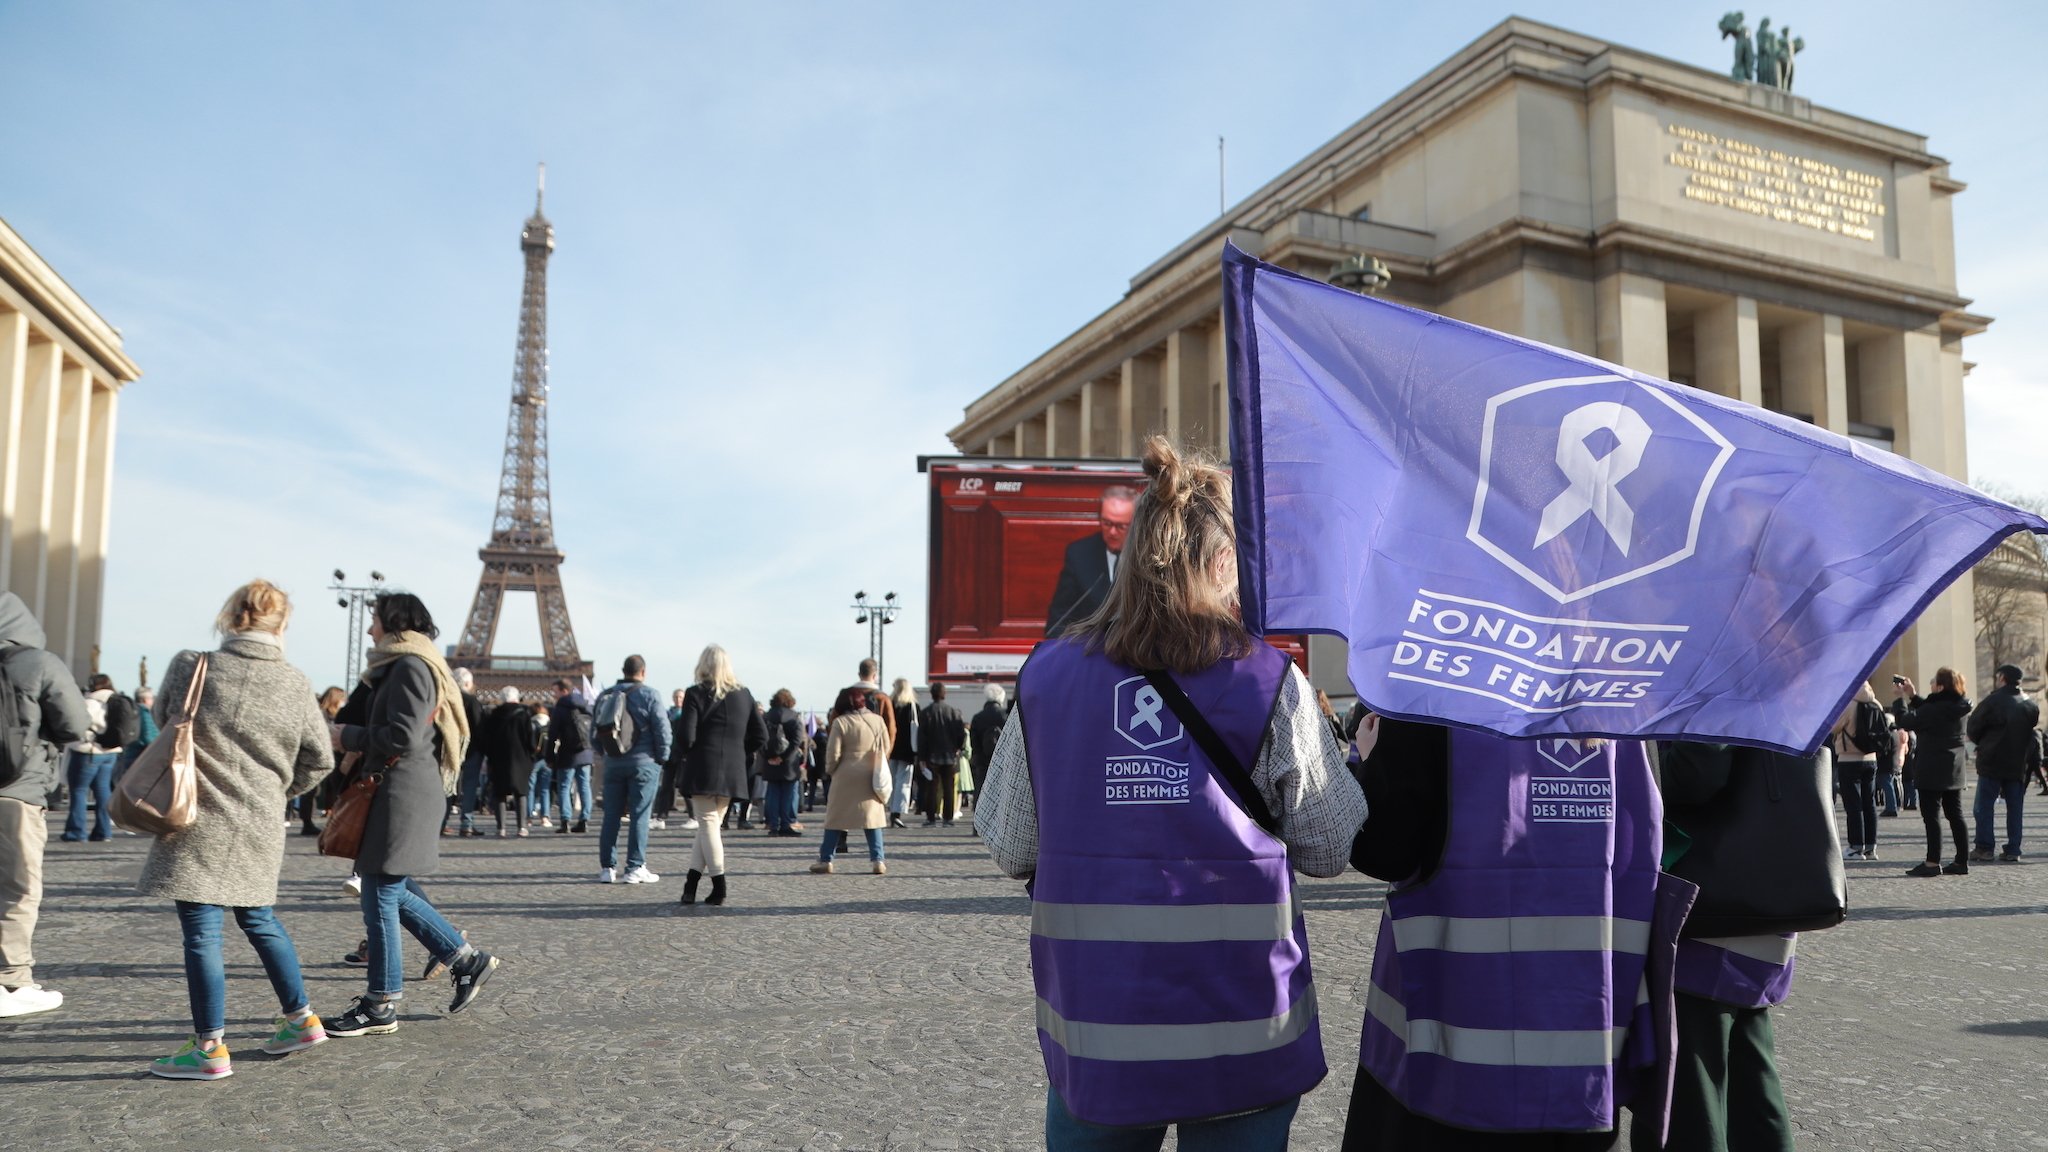 Pro-Abtreibungsdemonstration in der Nähe des Eiffelturms